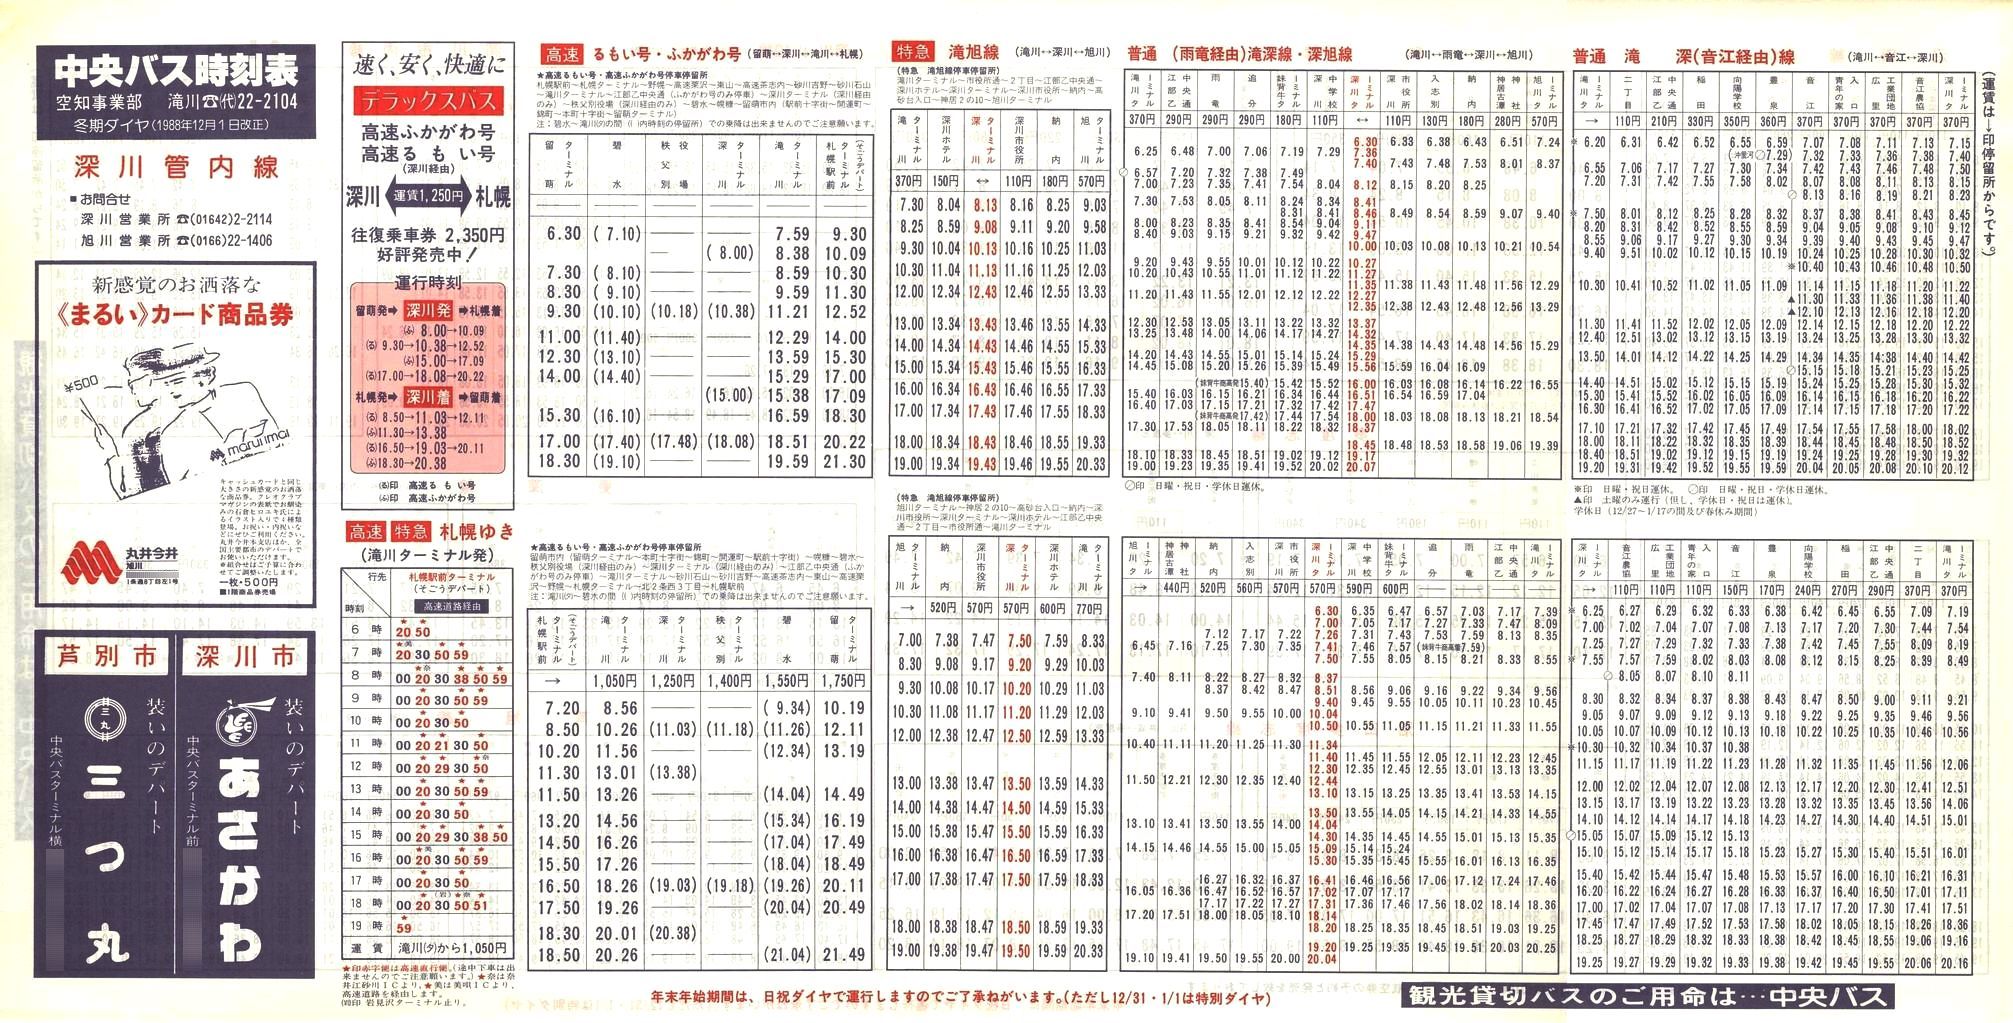 1988-12-01改正_北海道中央バス(空知)_深川管内線時刻表表面